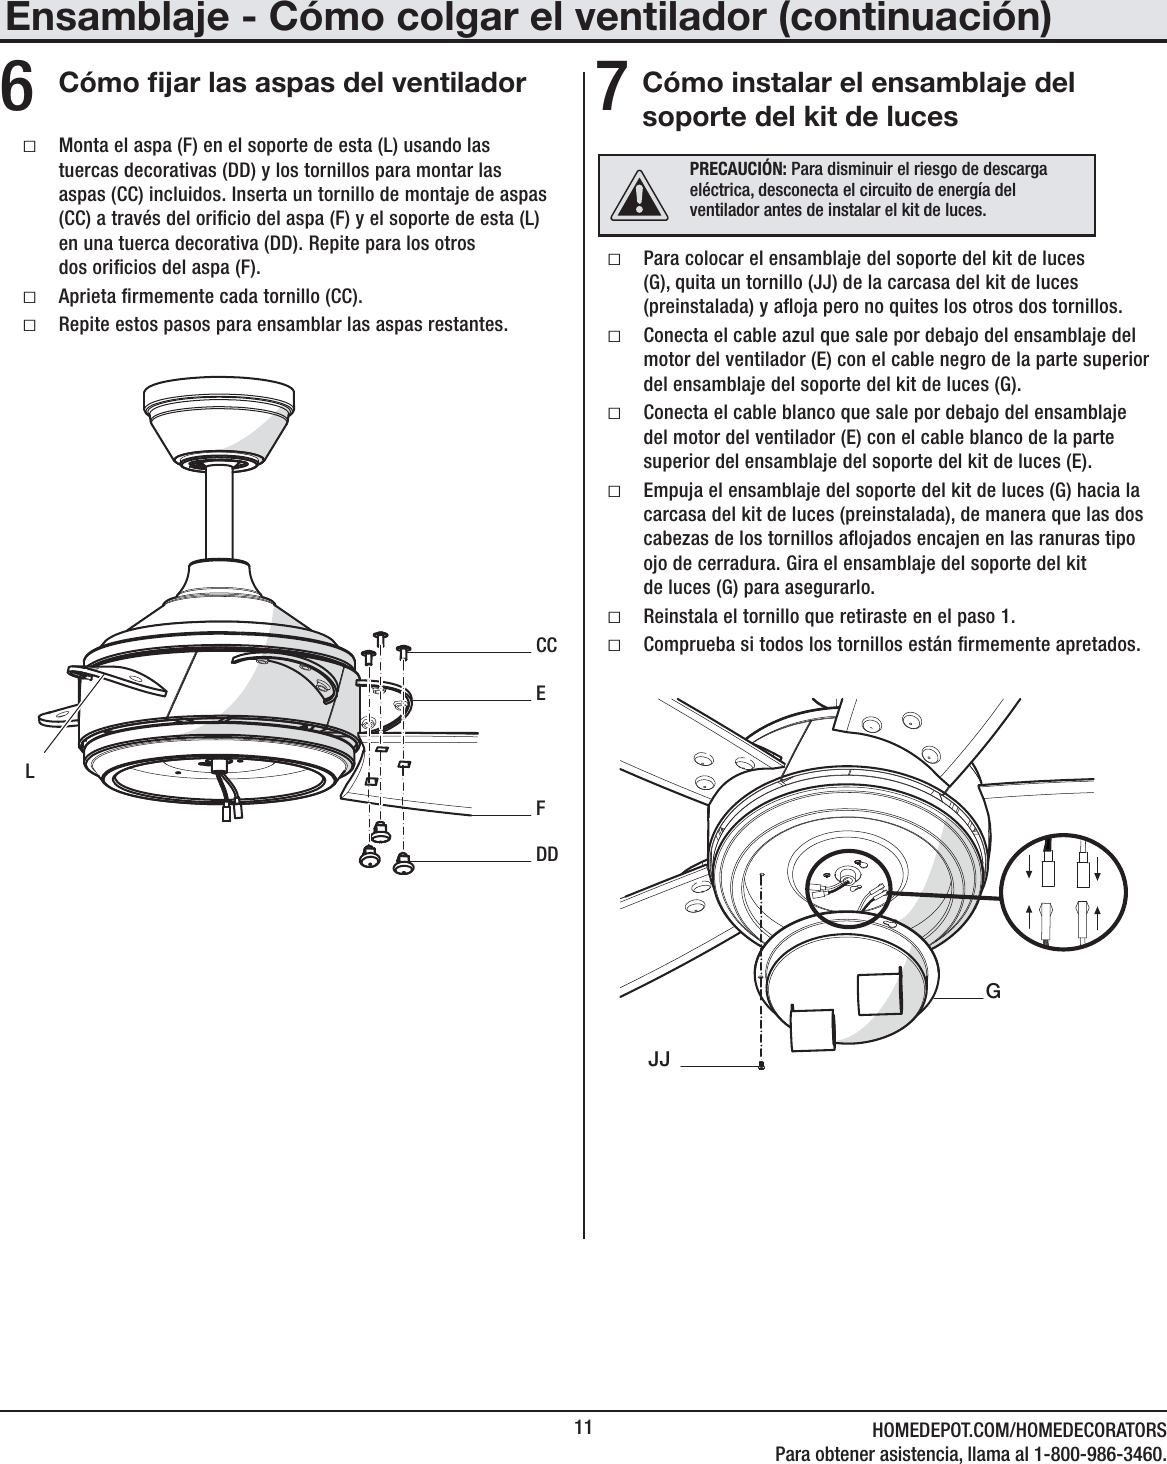 11 HOMEDEPOT.COM/HOMEDECORATORSPara obtener asistencia, llama al 1-800-986-3460.Cómo jar las aspas del ventilador6 ƑMonta el aspa (F) en el soporte de esta (L) usando las tuercas decorativas (DD) y los tornillos para montar las aspas (CC) incluidos. Inserta un tornillo de montaje de aspas (CC) a través del oricio del aspa (F) y el soporte de esta (L) en una tuerca decorativa (DD). Repite para los otros  dos oricios del aspa (F). ƑAprieta rmemente cada tornillo (CC). ƑRepite estos pasos para ensamblar las aspas restantes.ECCDDFLEnsamblaje - Cómo colgar el ventilador (continuación)Cómo instalar el ensamblaje del soporte del kit de luces7 ƑPara colocar el ensamblaje del soporte del kit de luces (G), quita un tornillo (JJ) de la carcasa del kit de luces (preinstalada) y aoja pero no quites los otros dos tornillos. ƑConecta el cable azul que sale por debajo del ensamblaje del motor del ventilador (E) con el cable negro de la parte superior del ensamblaje del soporte del kit de luces (G). ƑConecta el cable blanco que sale por debajo del ensamblaje del motor del ventilador (E) con el cable blanco de la parte superior del ensamblaje del soporte del kit de luces (E). ƑEmpuja el ensamblaje del soporte del kit de luces (G) hacia la carcasa del kit de luces (preinstalada), de manera que las dos cabezas de los tornillos aojados encajen en las ranuras tipo ojo de cerradura. Gira el ensamblaje del soporte del kit  de luces (G) para asegurarlo.  ƑReinstala el tornillo que retiraste en el paso 1. ƑComprueba si todos los tornillos están rmemente apretados.  JJGPRECAUCIÓN: Para disminuir el riesgo de descarga eléctrica, desconecta el circuito de energía del ventilador antes de instalar el kit de luces. 